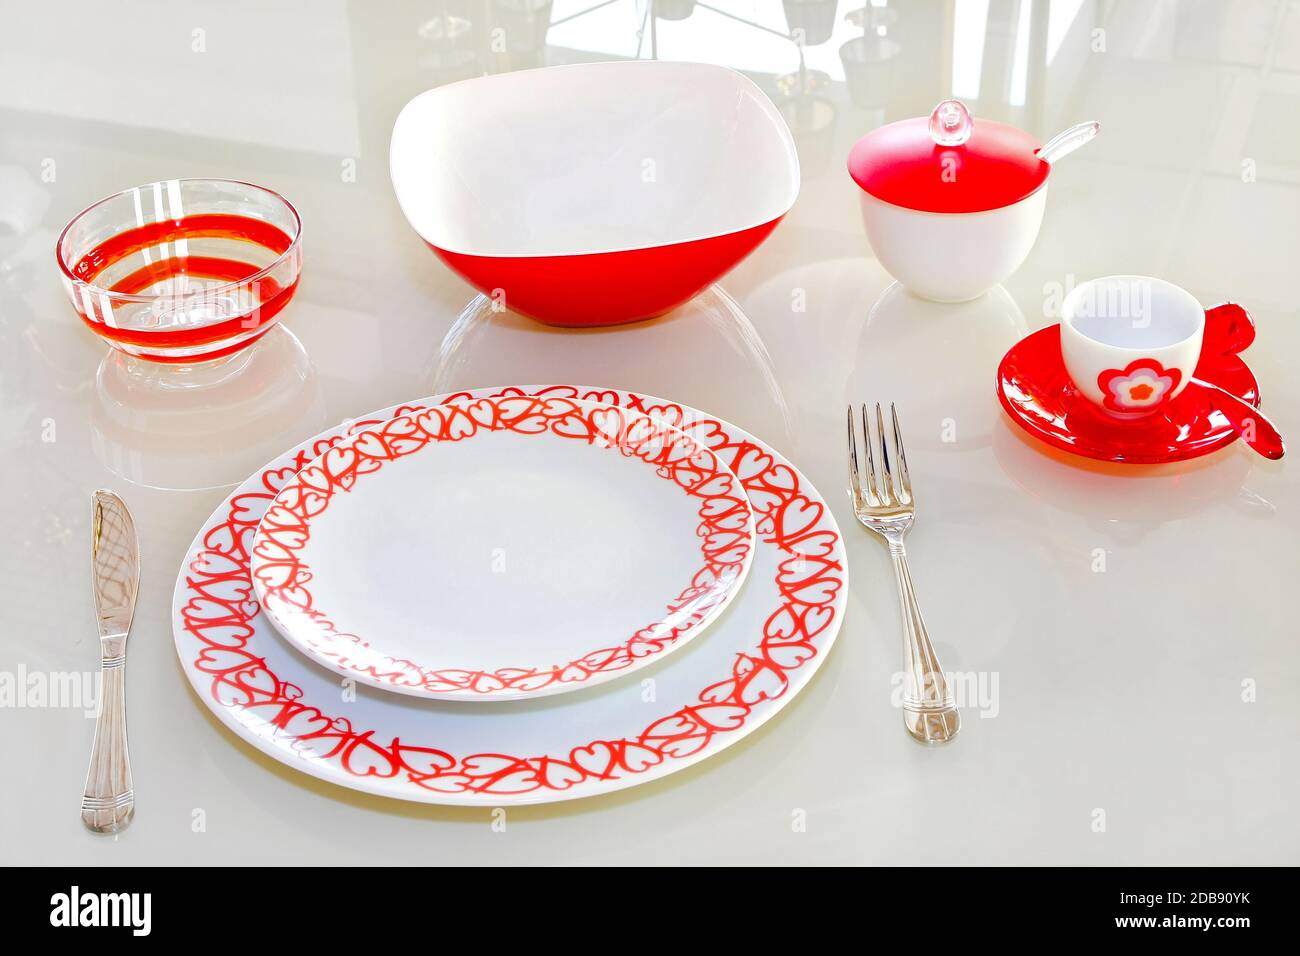 J'adore la vaisselle avec des coeurs rouges à la table en verre Photo Stock  - Alamy